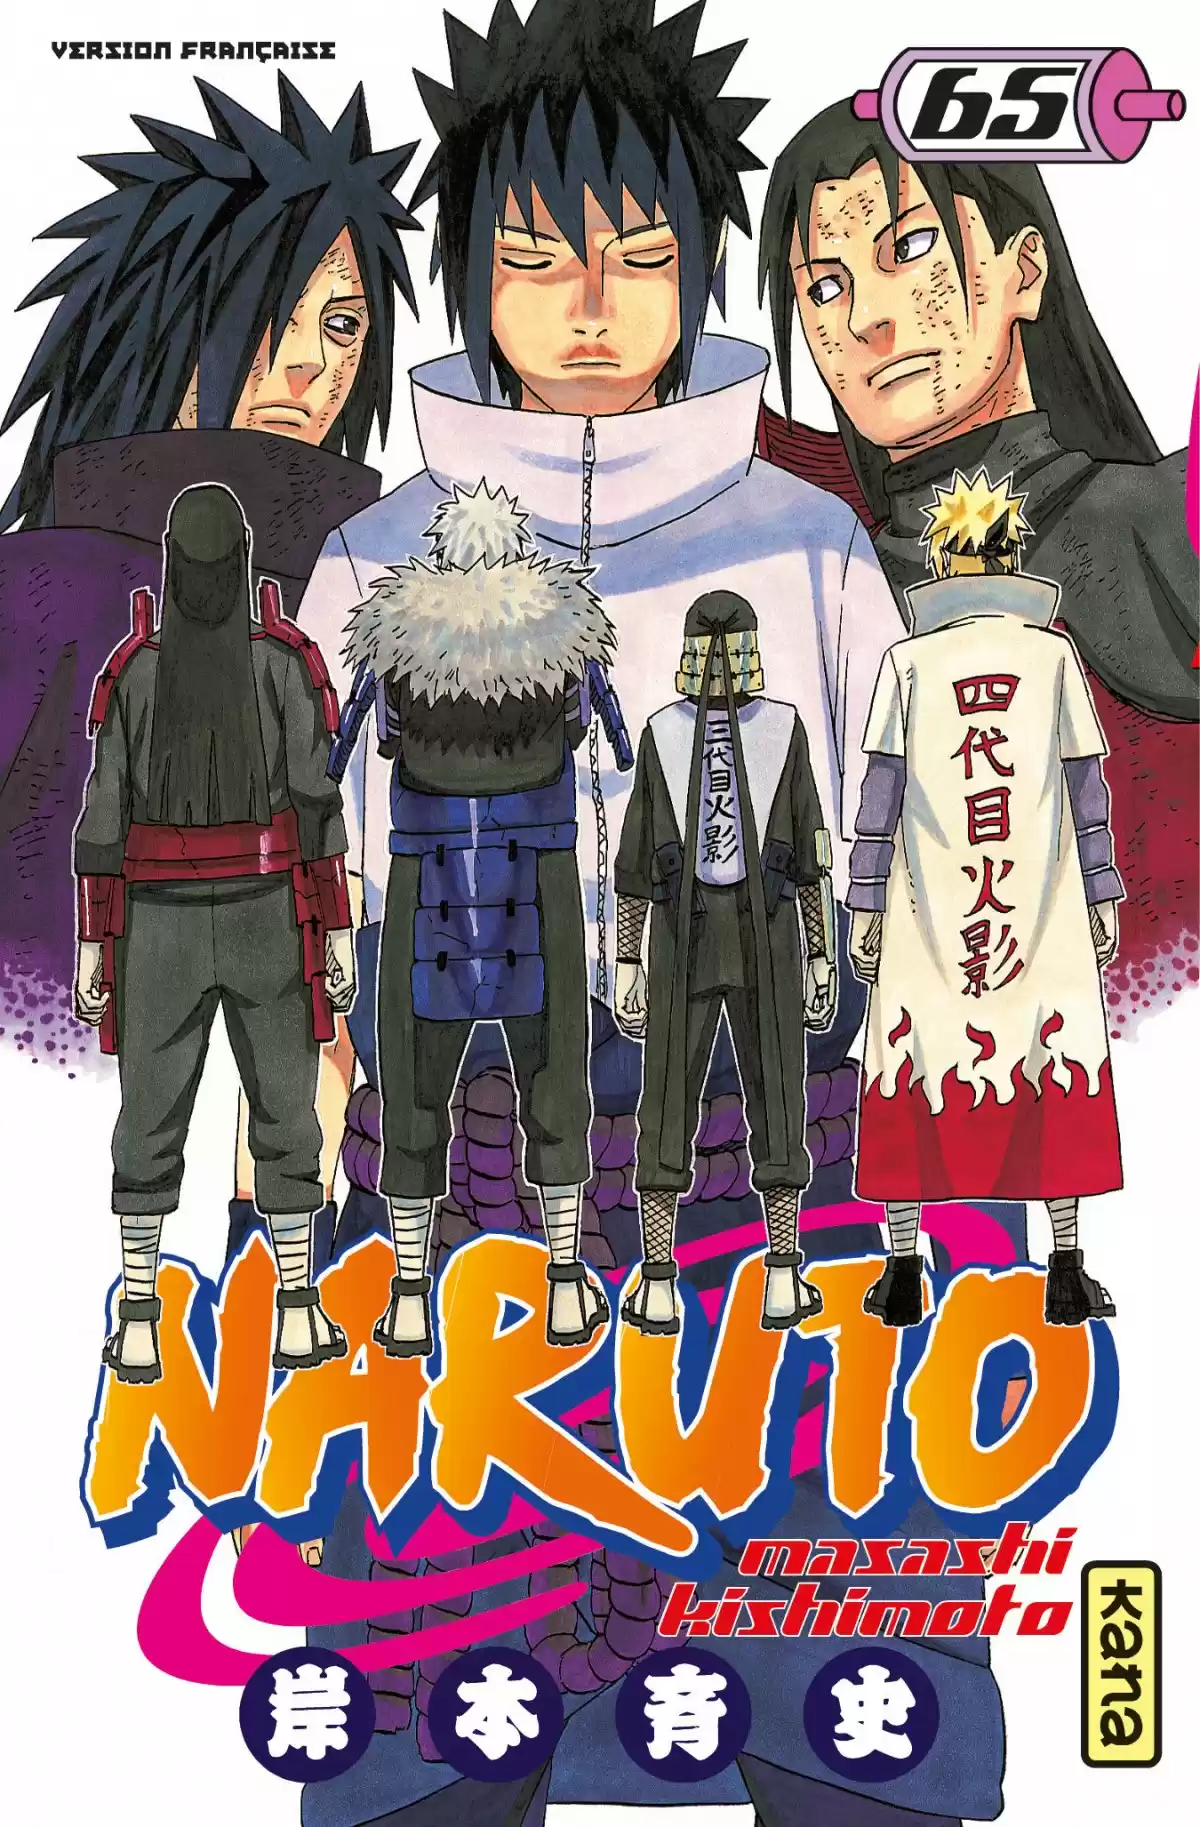 Naruto Volume 65 page 1